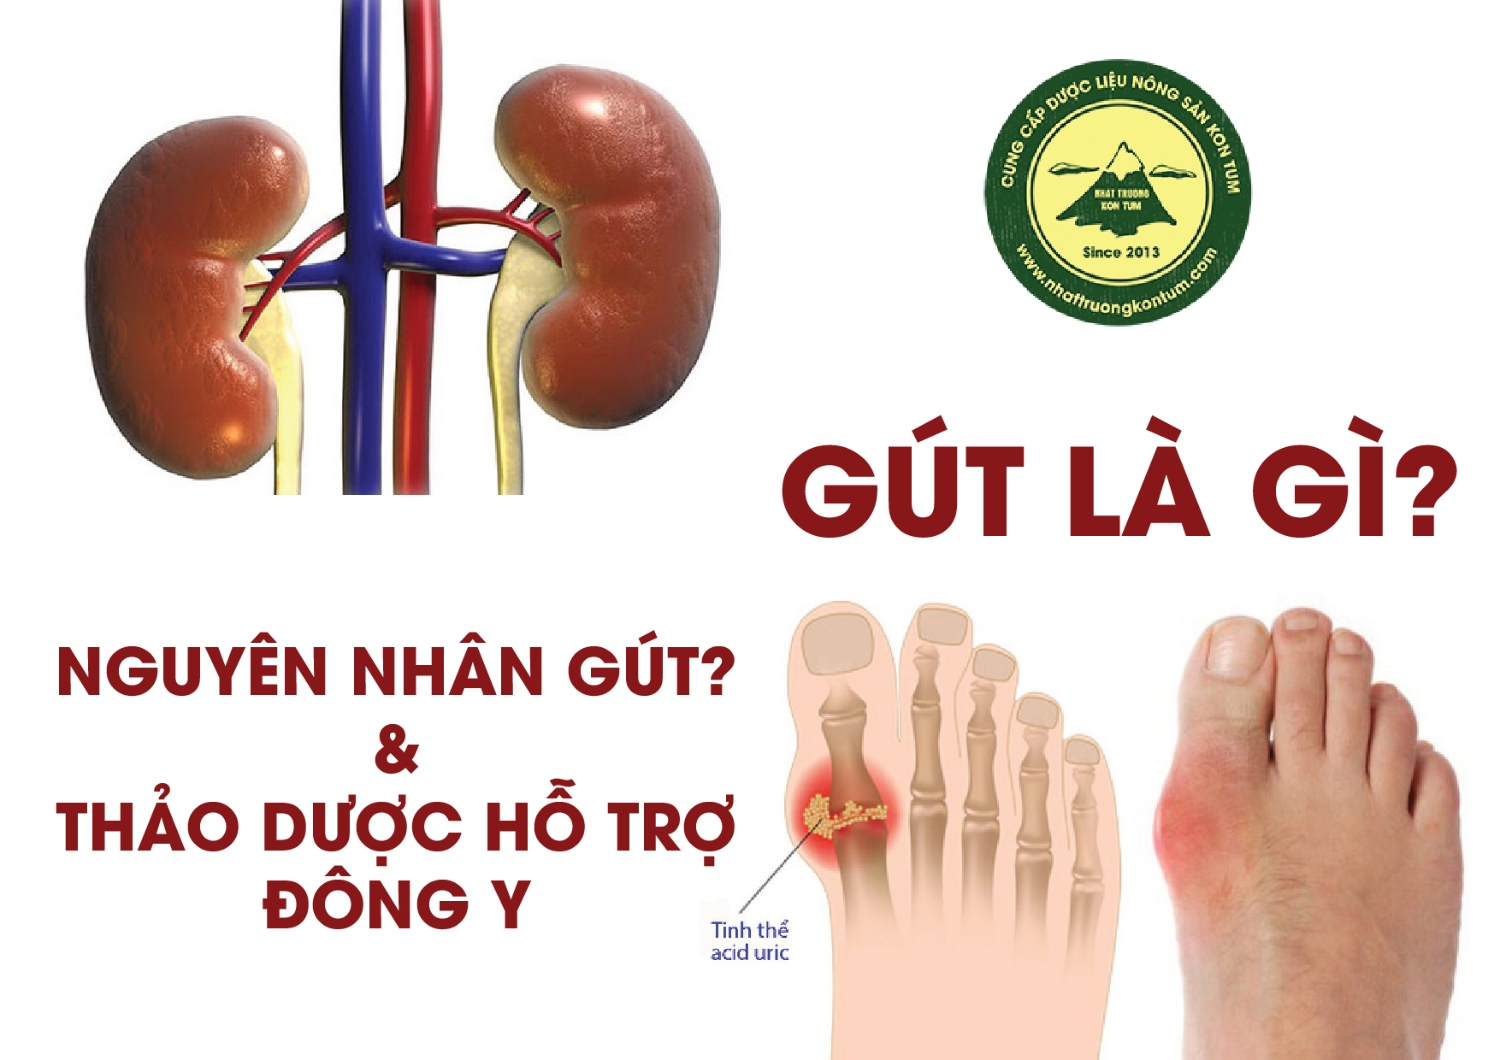 Định nghĩa Bệnh Gout theo Y Học Hiện Đại và Đông Y có phần hơi khác nhau